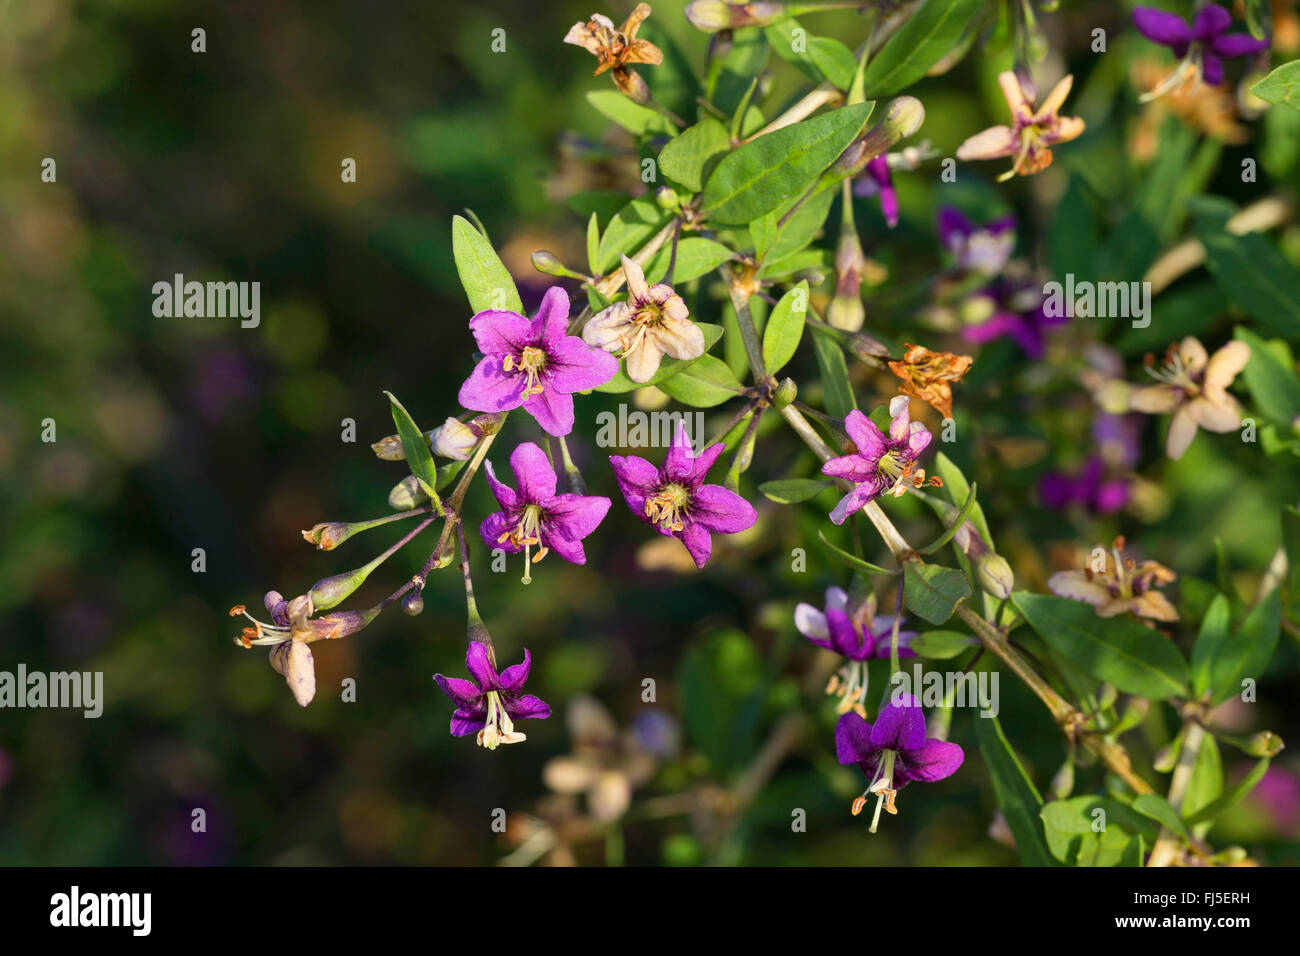 Chinese wolfberry, common matrimony vine (Lycium barbarum, Lycium halimifolium), blooming branch, Germany Stock Photo